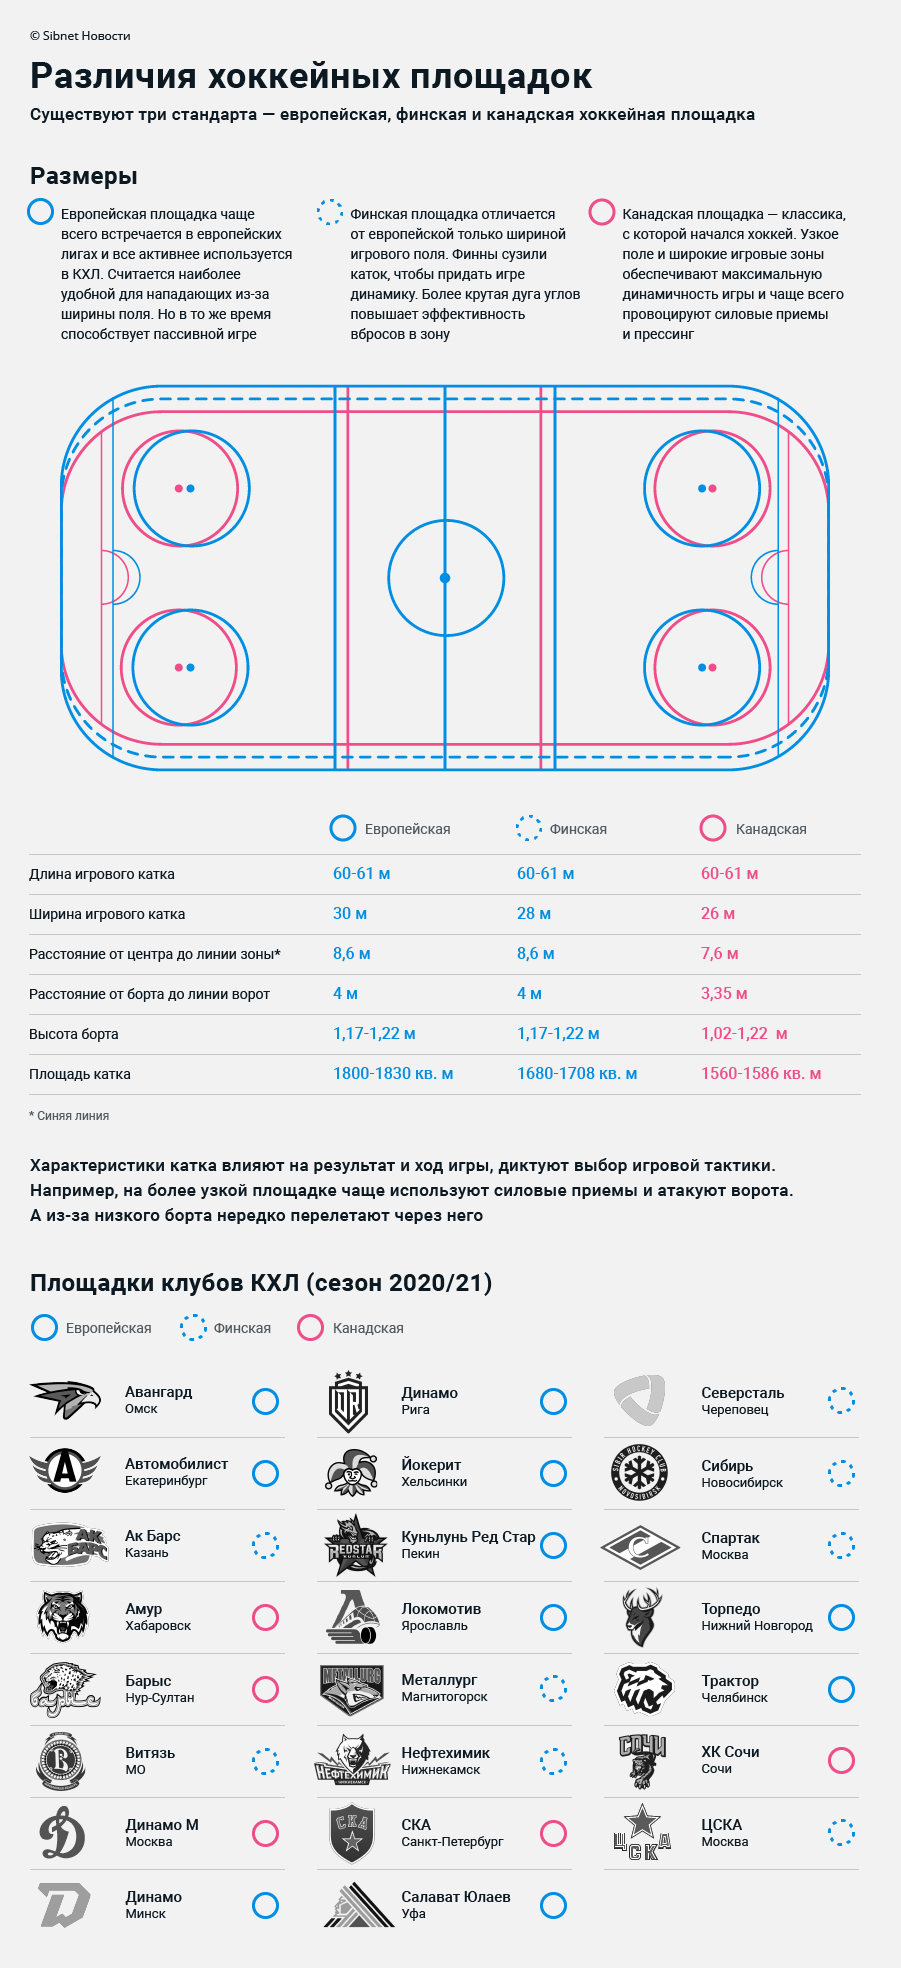 Размеры европейской, канадской и финской хоккейных площадок